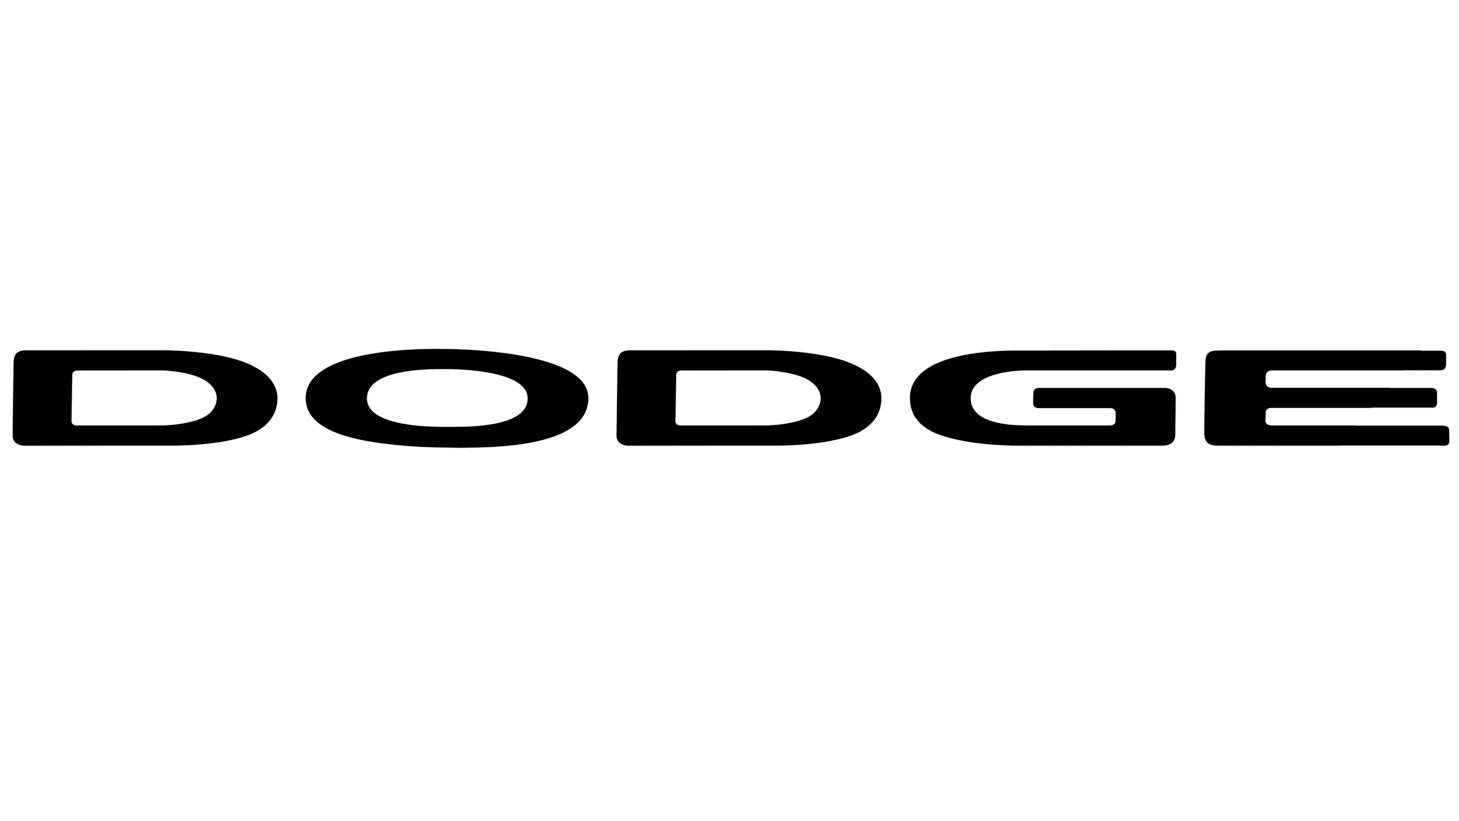 Dodge symbol